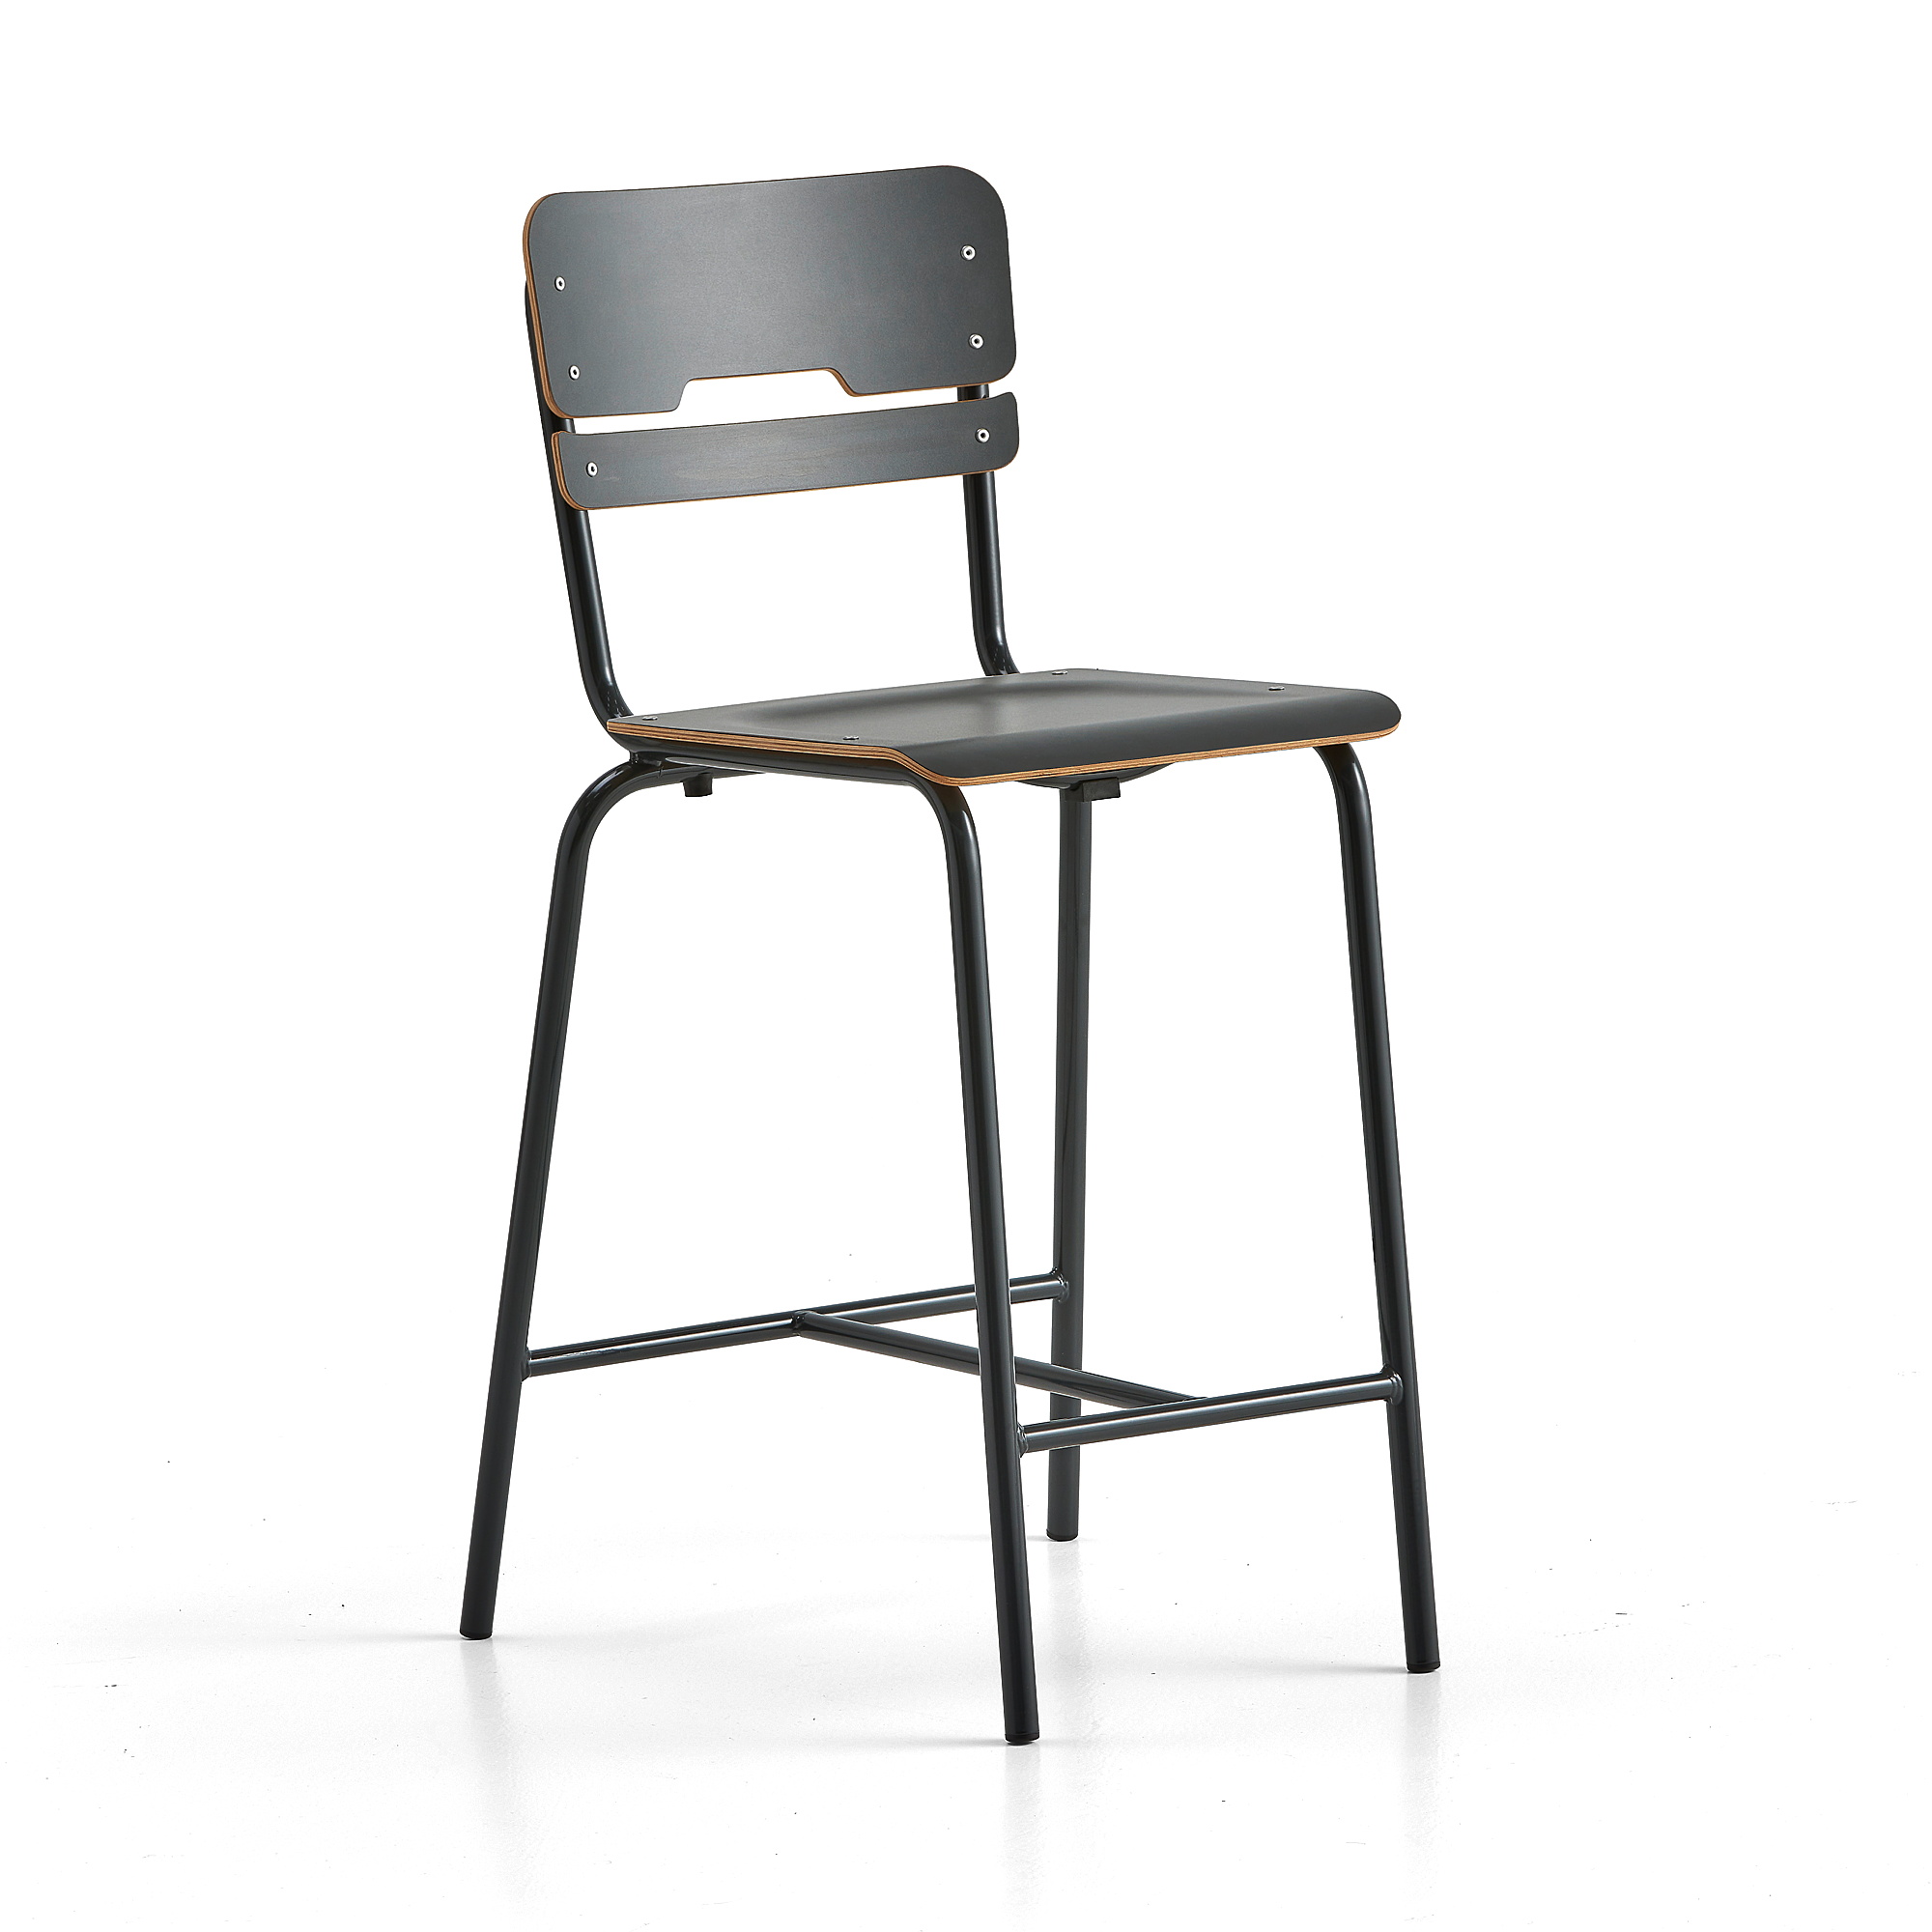 Školní židle SCIENTIA, sedák 390x390 mm, výška 650 mm, antracitová/antracitová